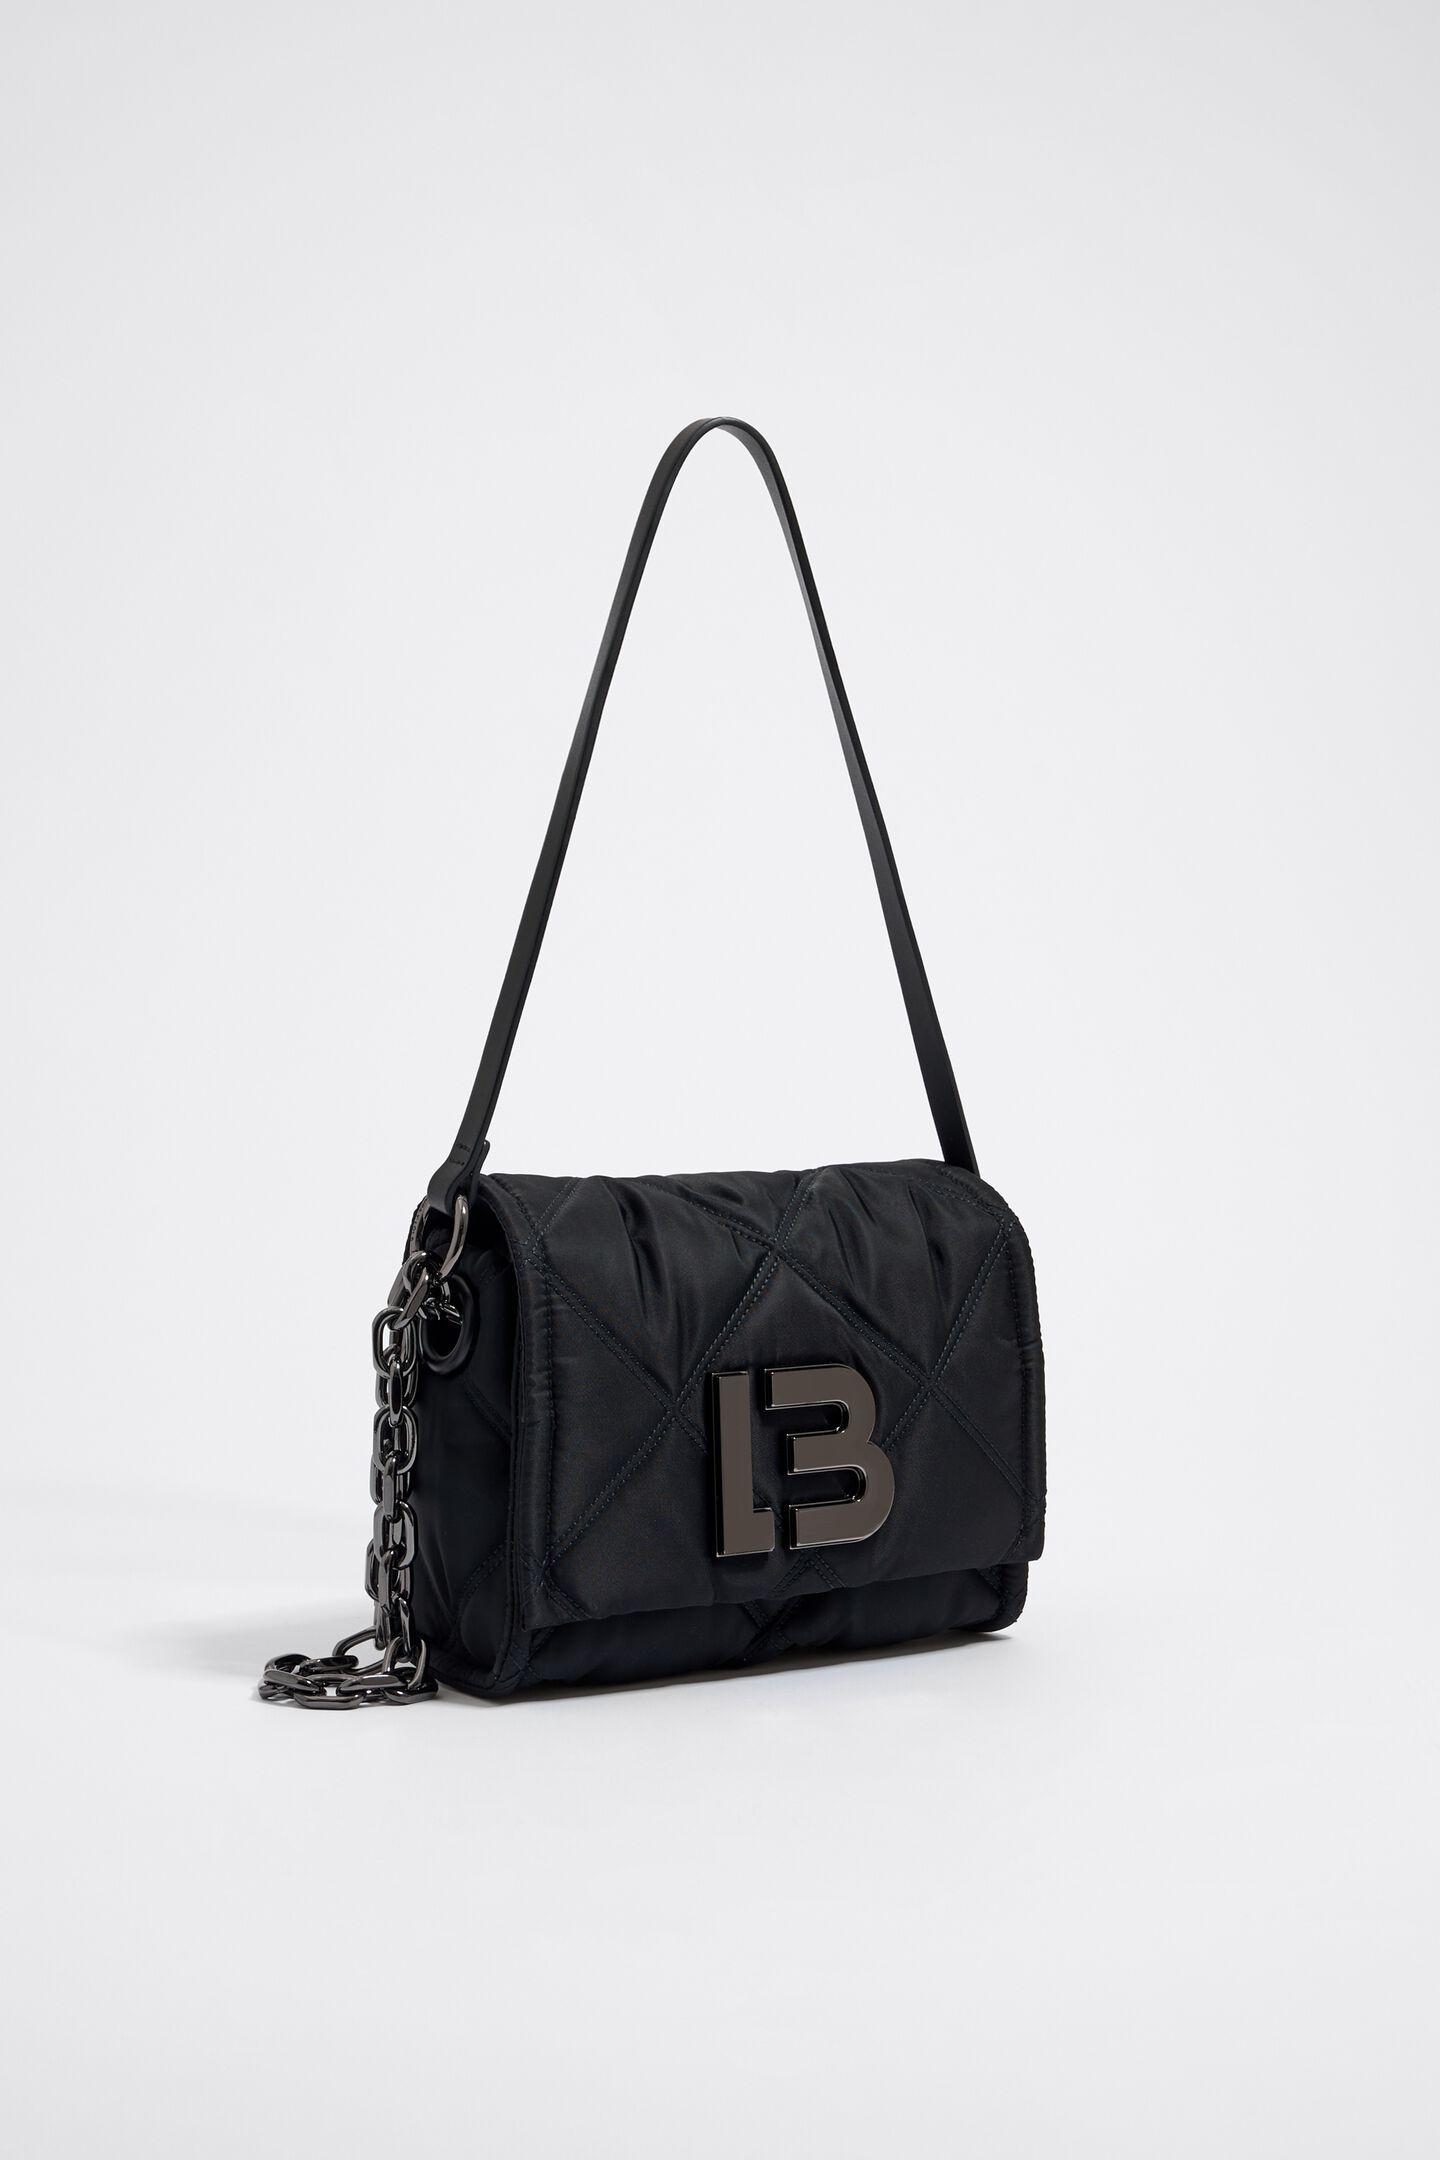 Bimba Y Lola S Black Nylon Crossbody Bag with Flap